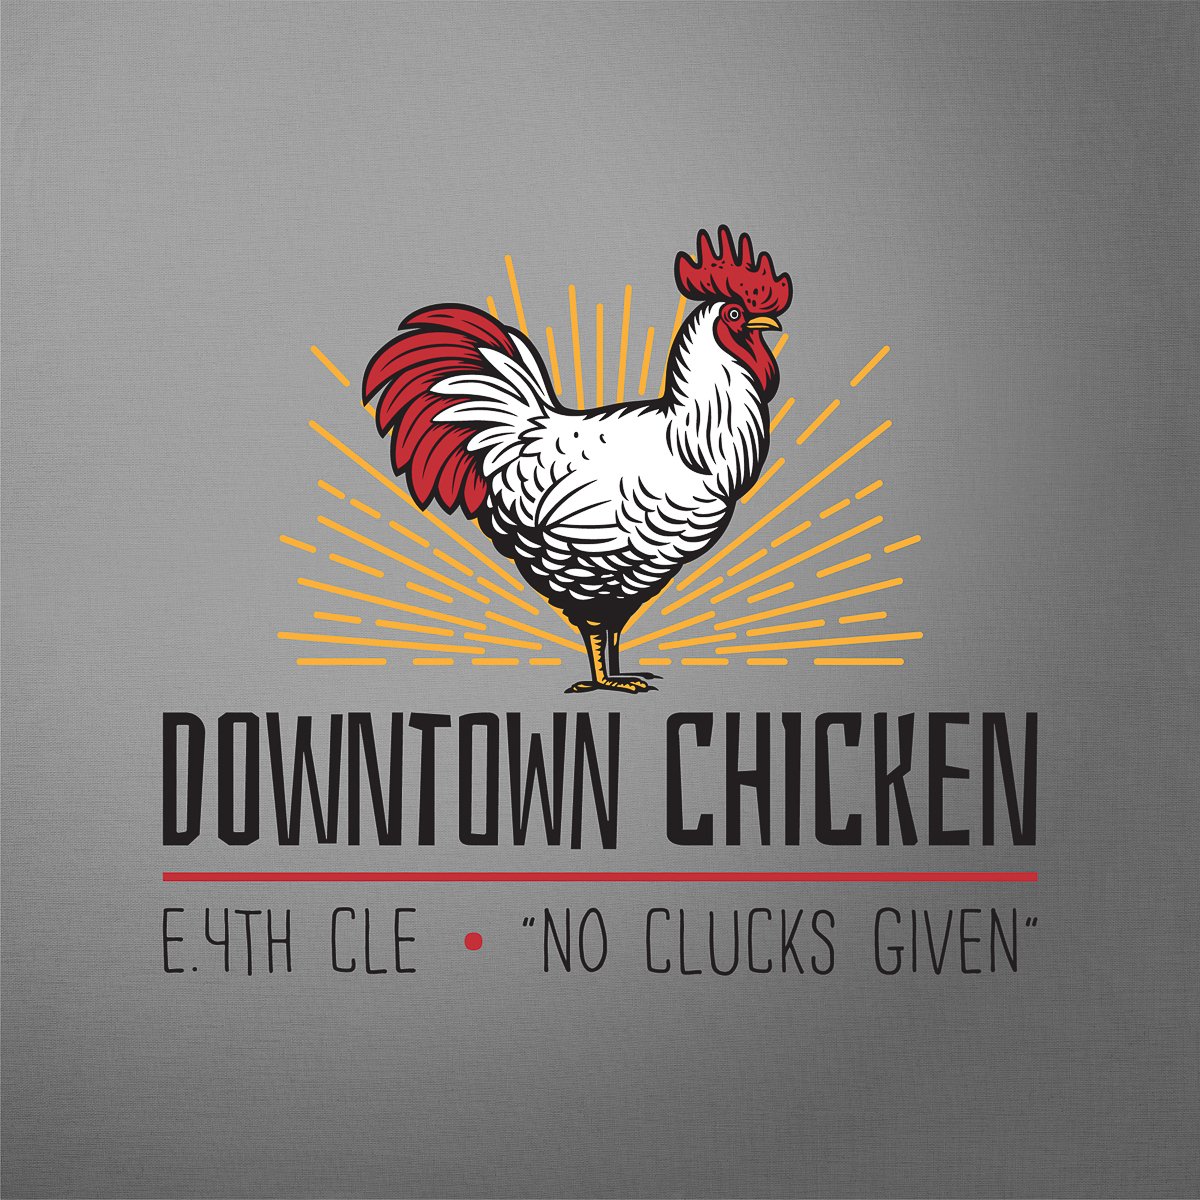 Downtown Chicken logo.